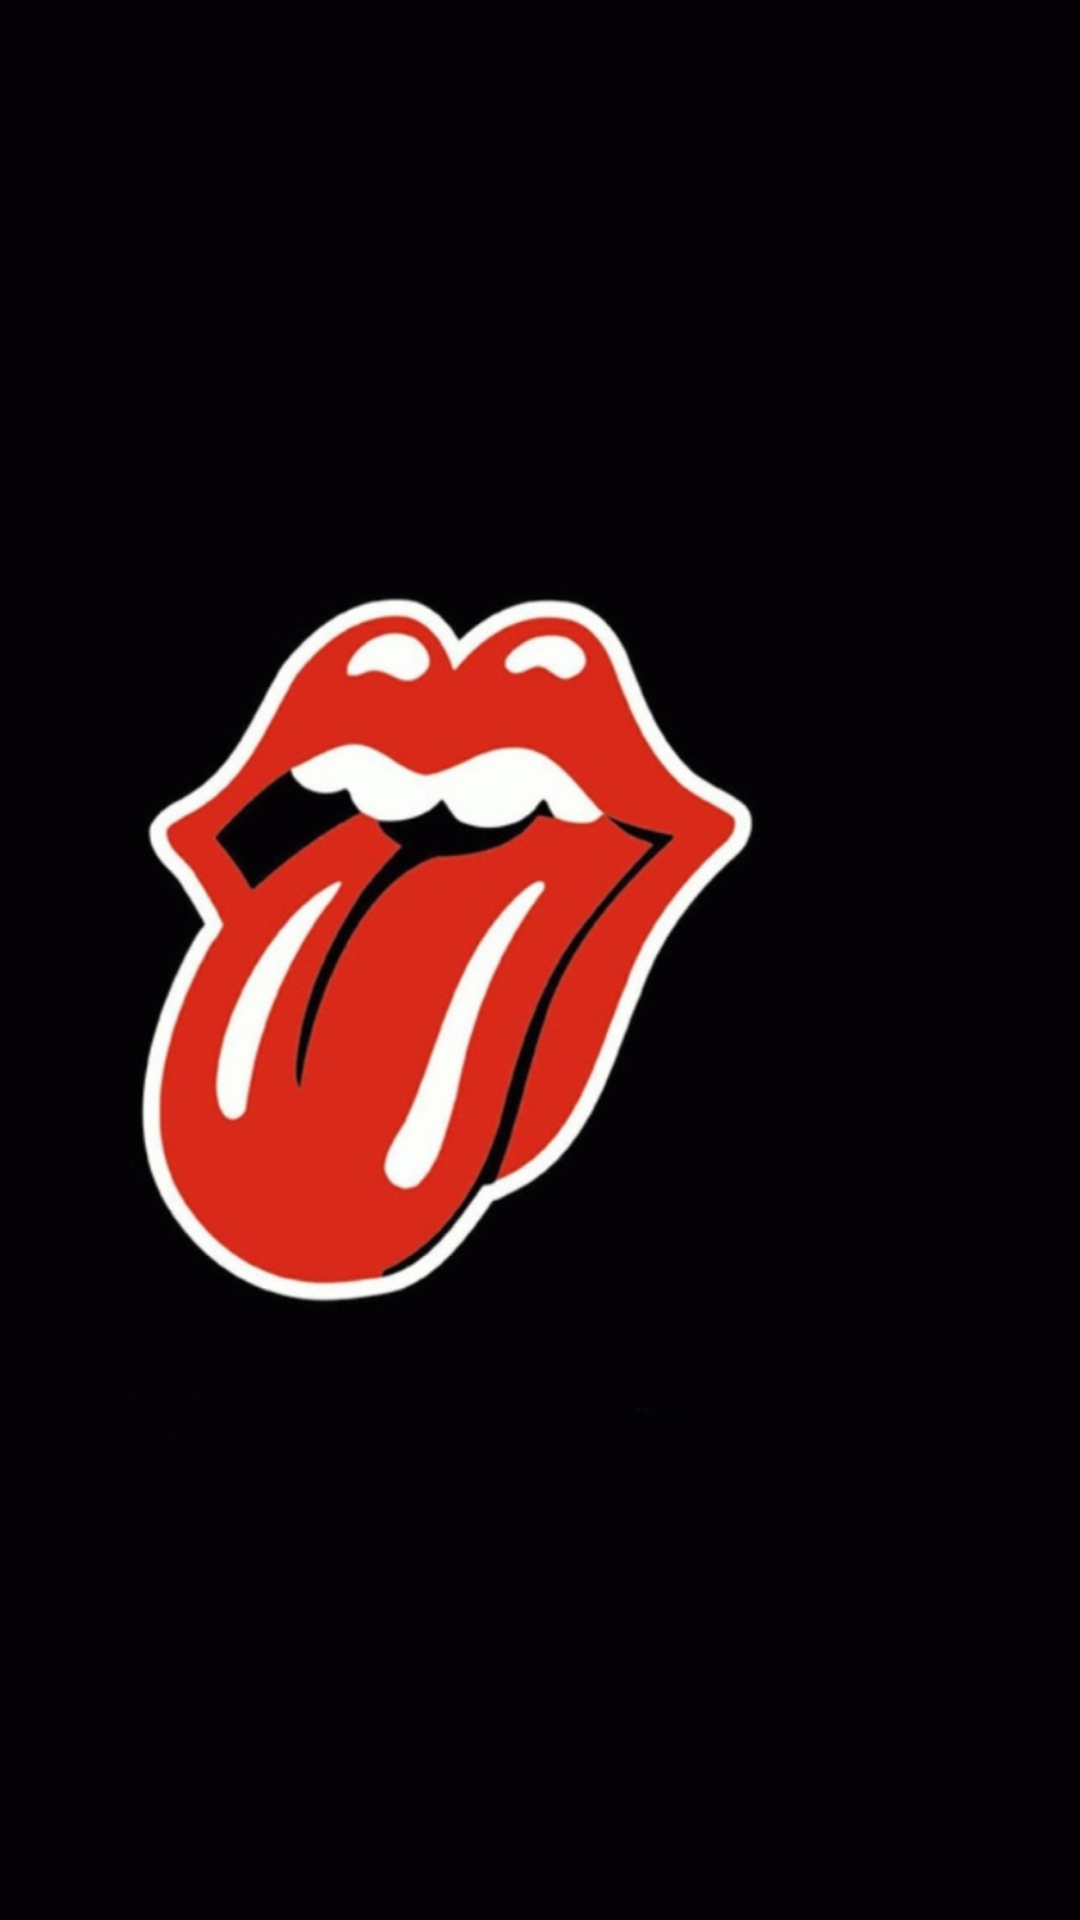 Rolling Stones wallpaper 1080x1920